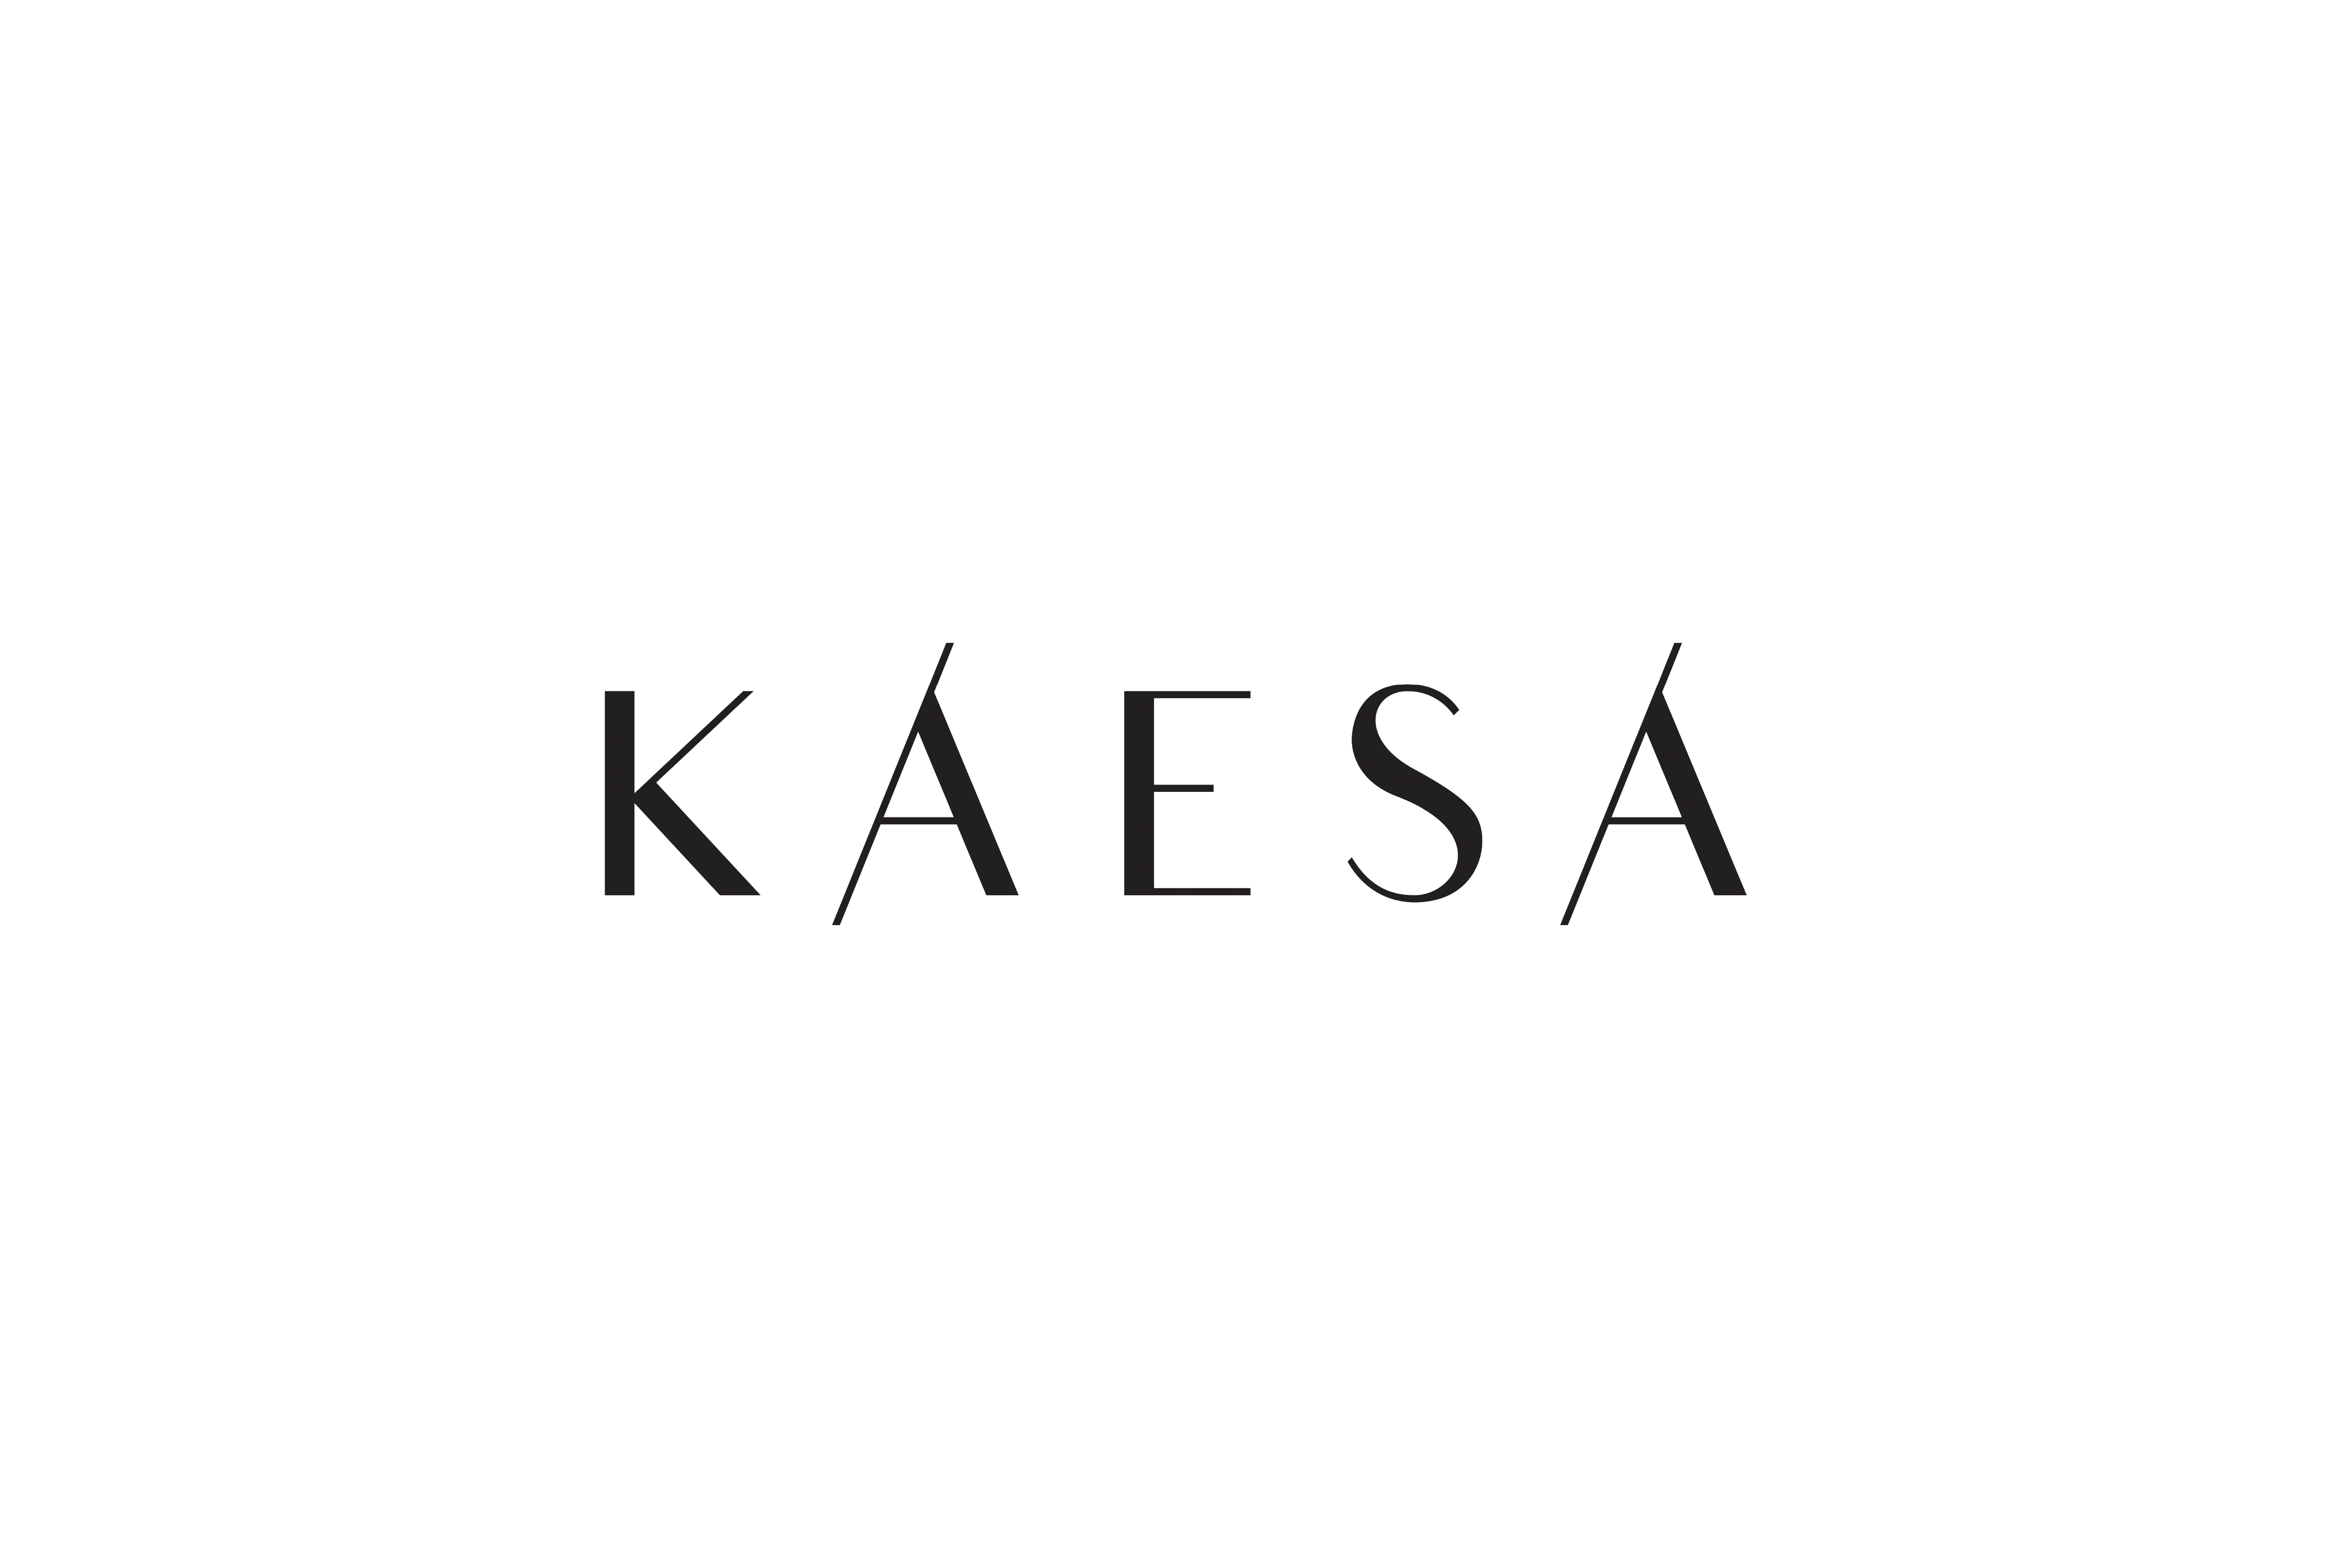 Kaesa